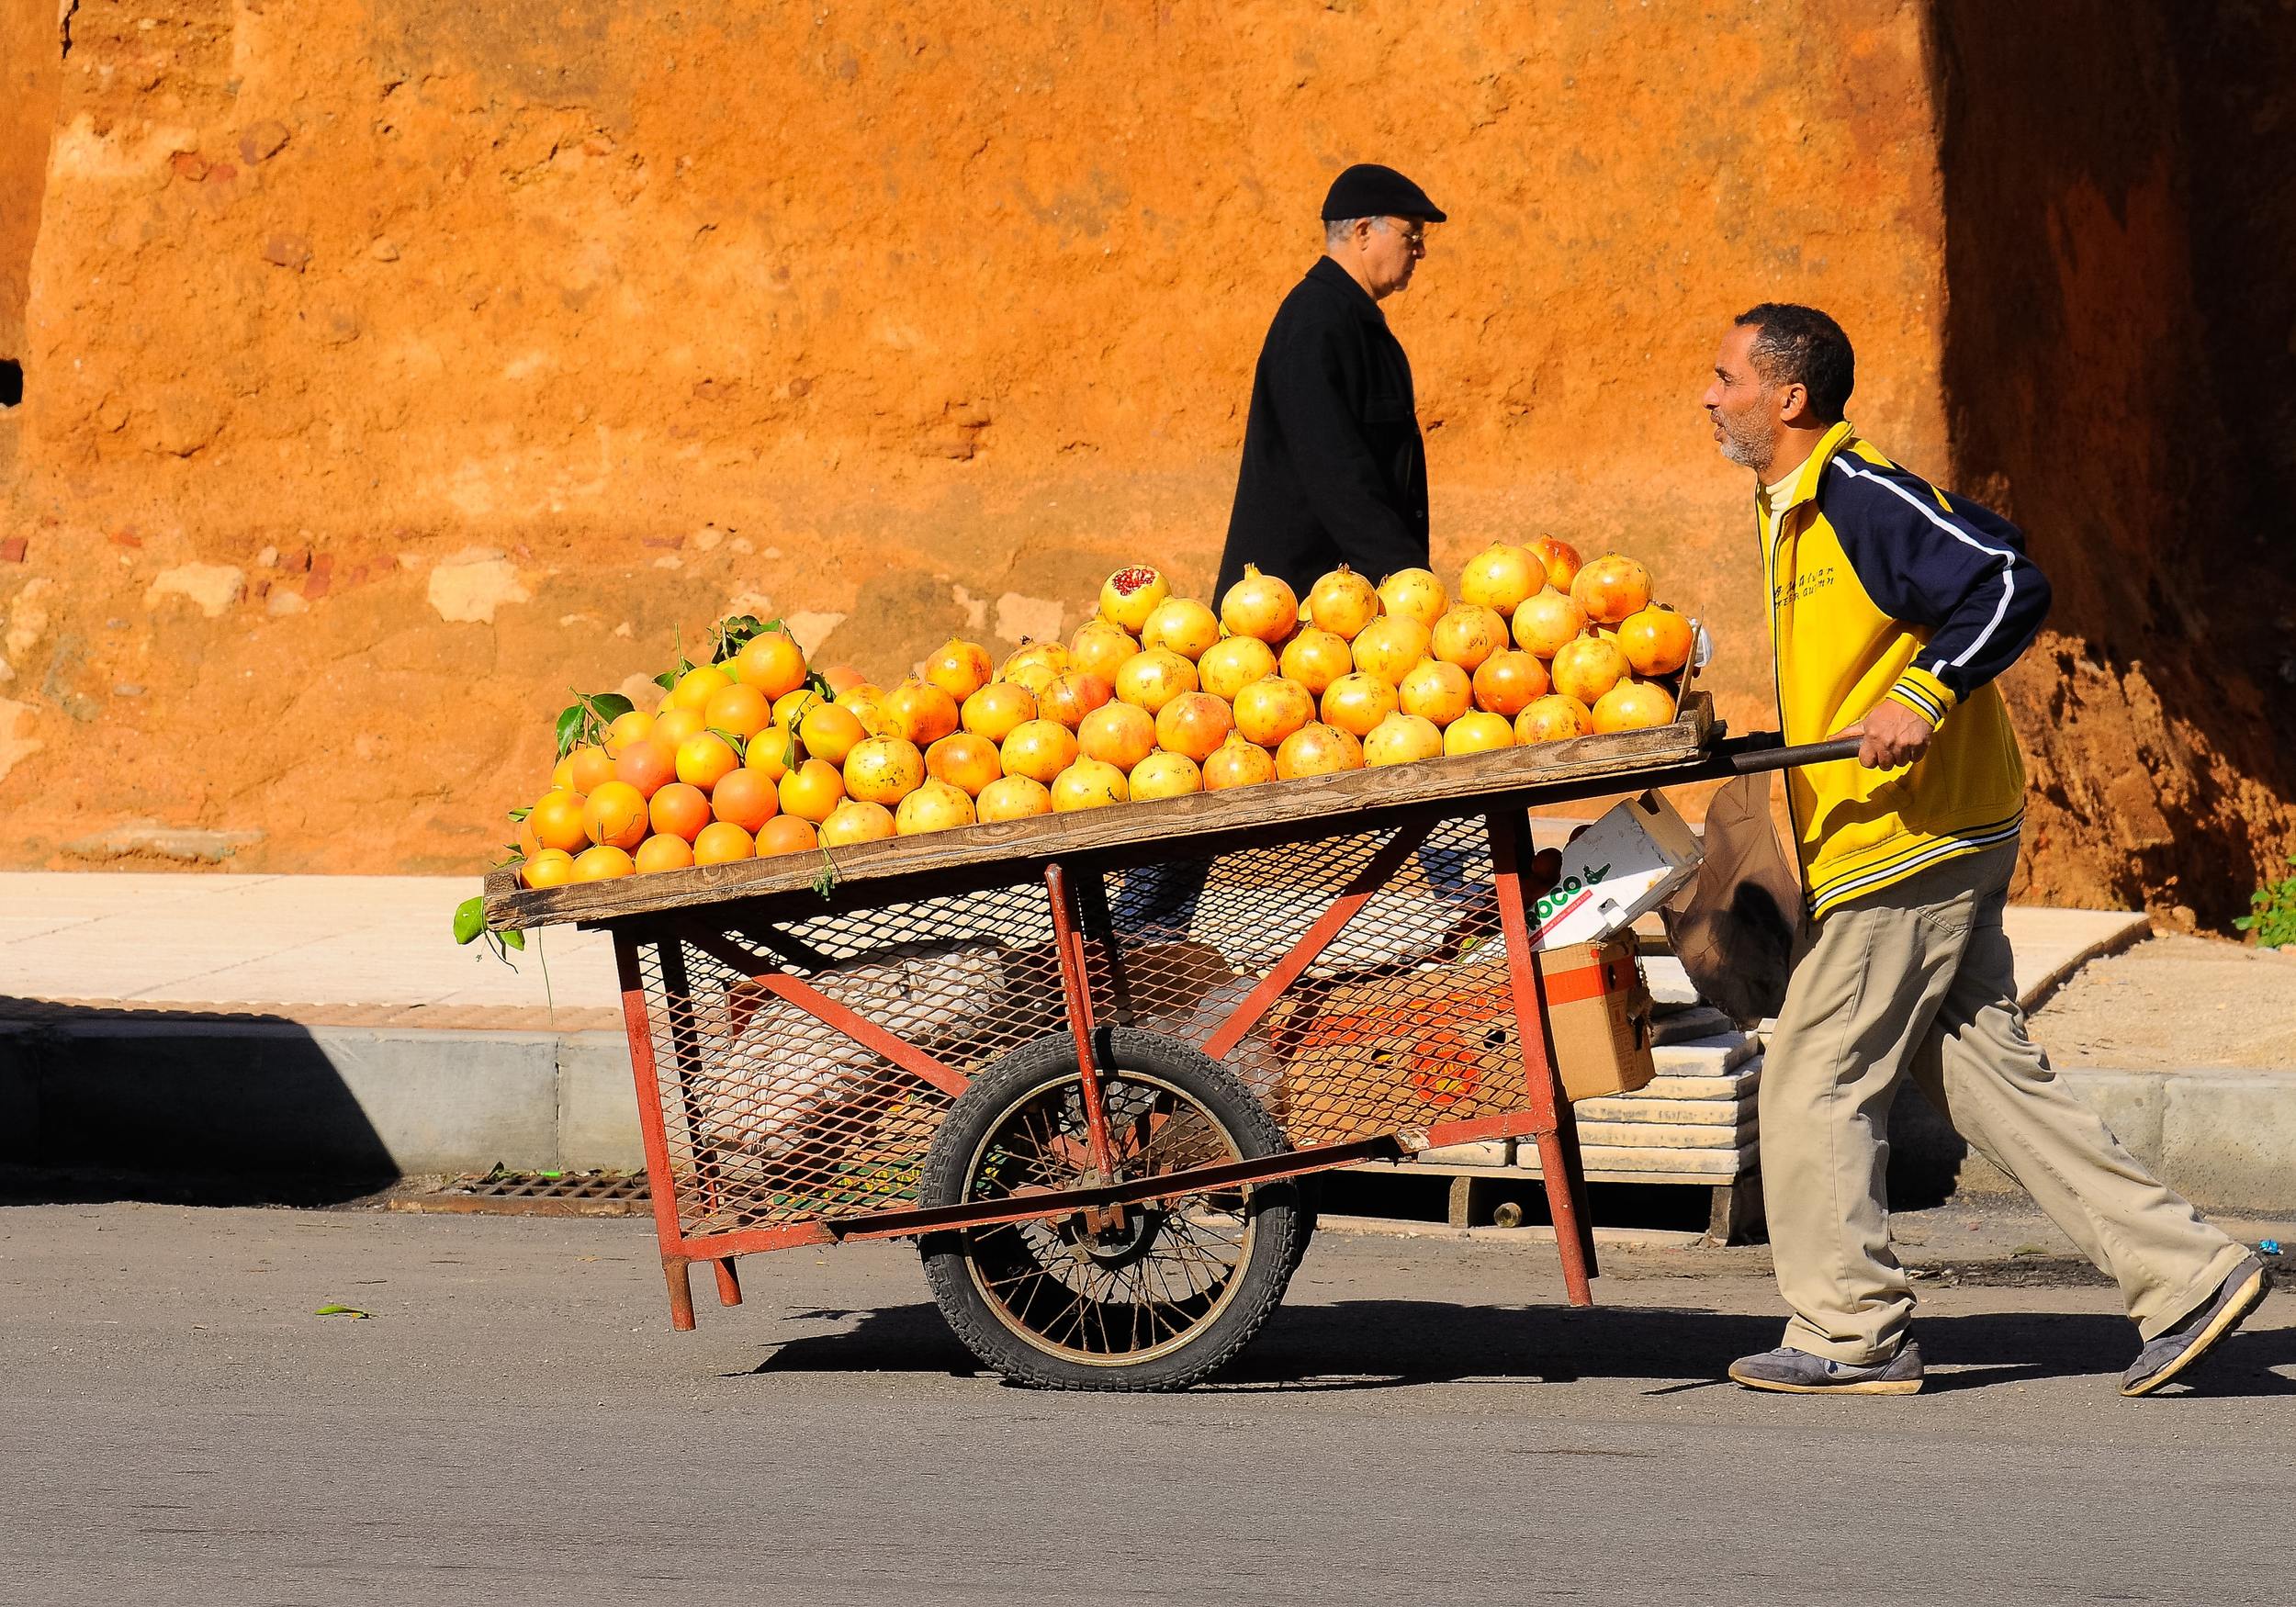 Pomeranče v Casablance Foto Eduardo C. G na Unsplash